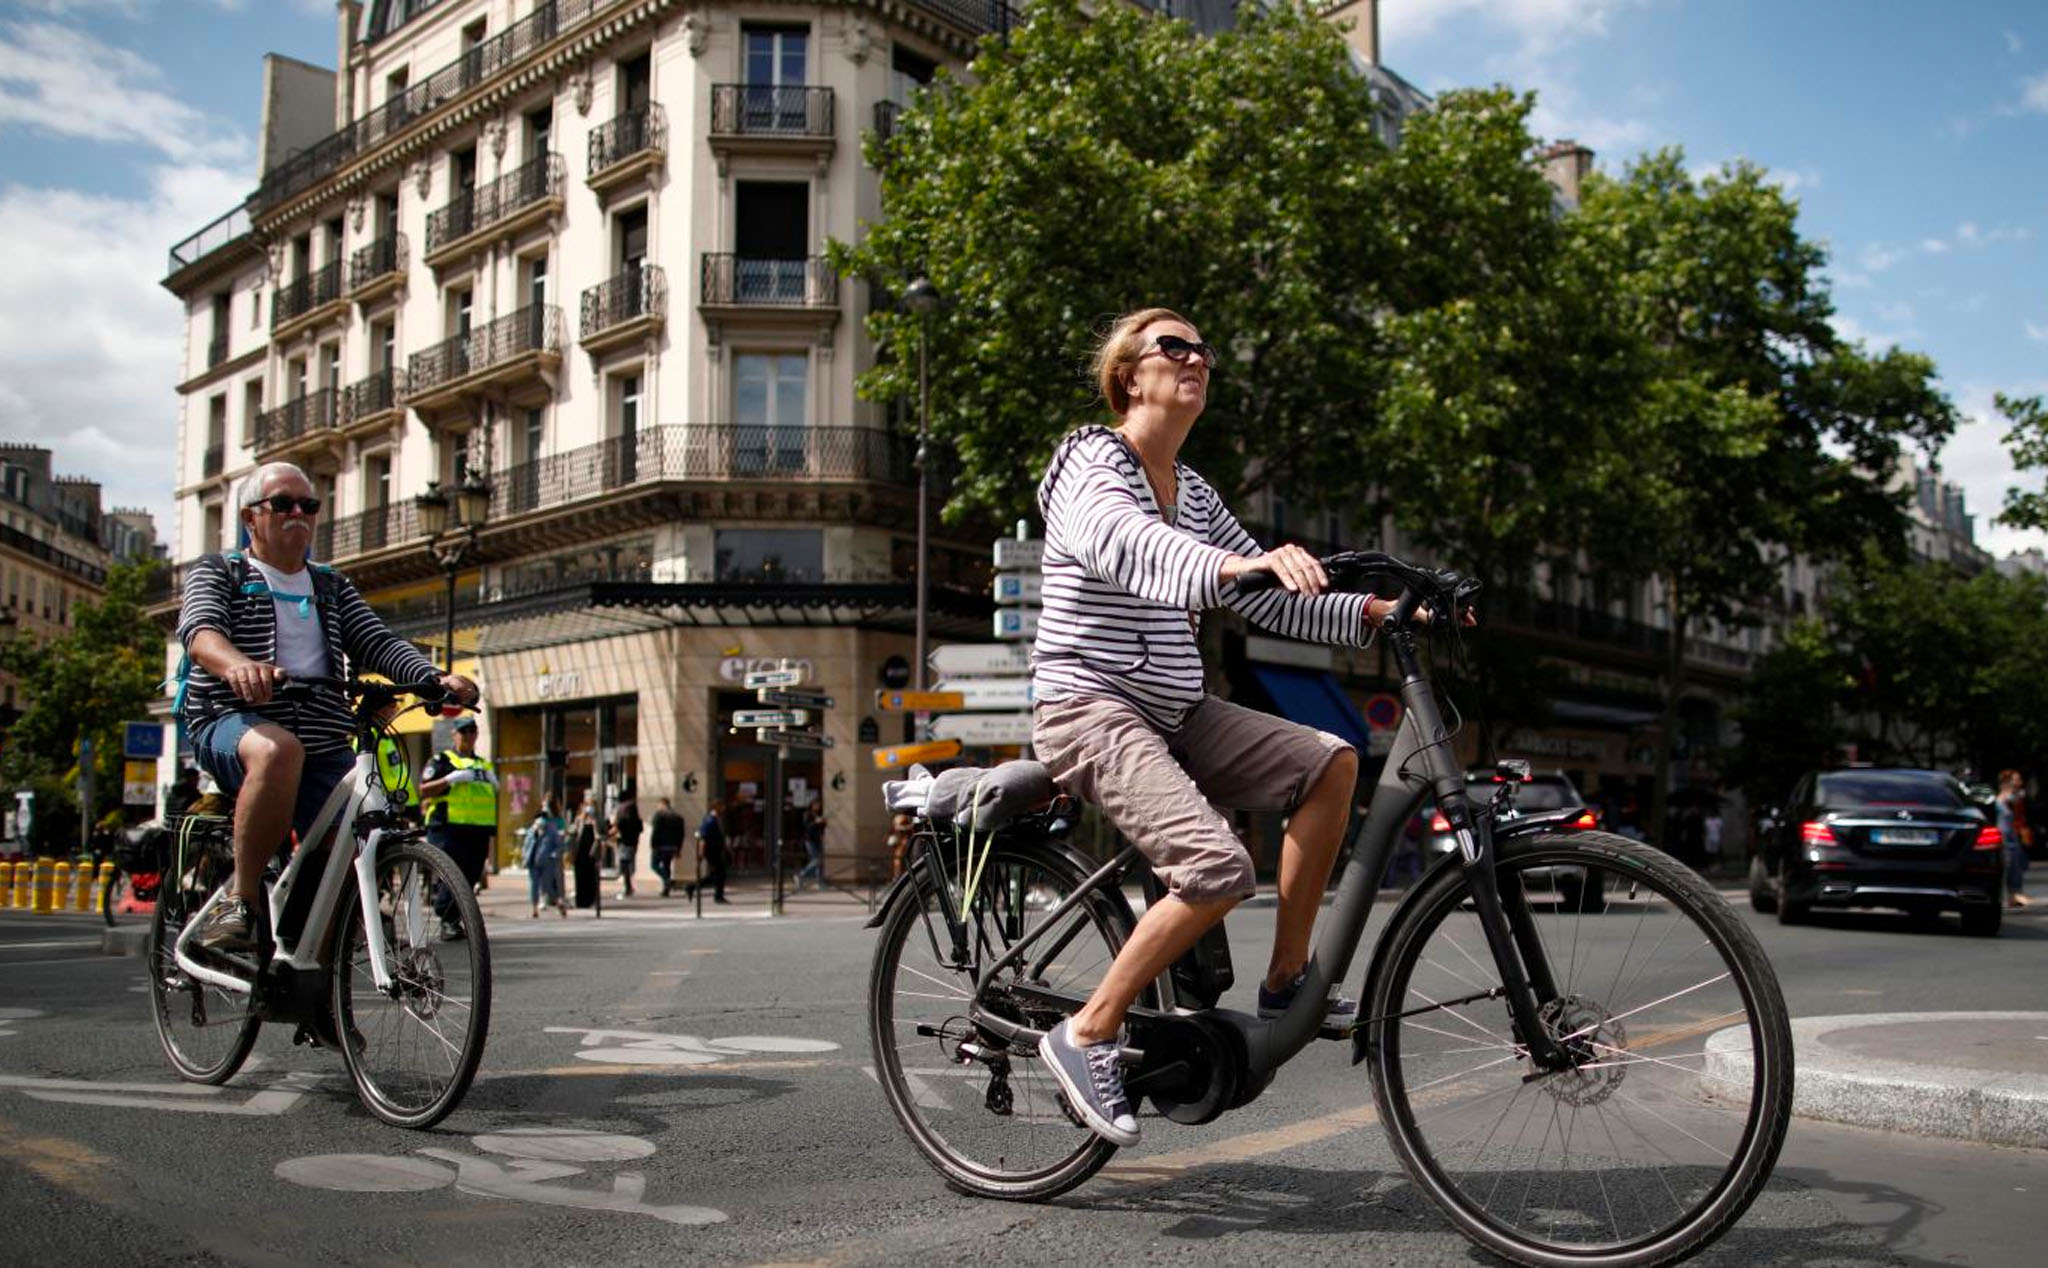 Pháp tung gói trợ cấp lên đến 4.000 EUR cho người dân đổi xe hơi chạy bằng xăng sang xe đạp điện